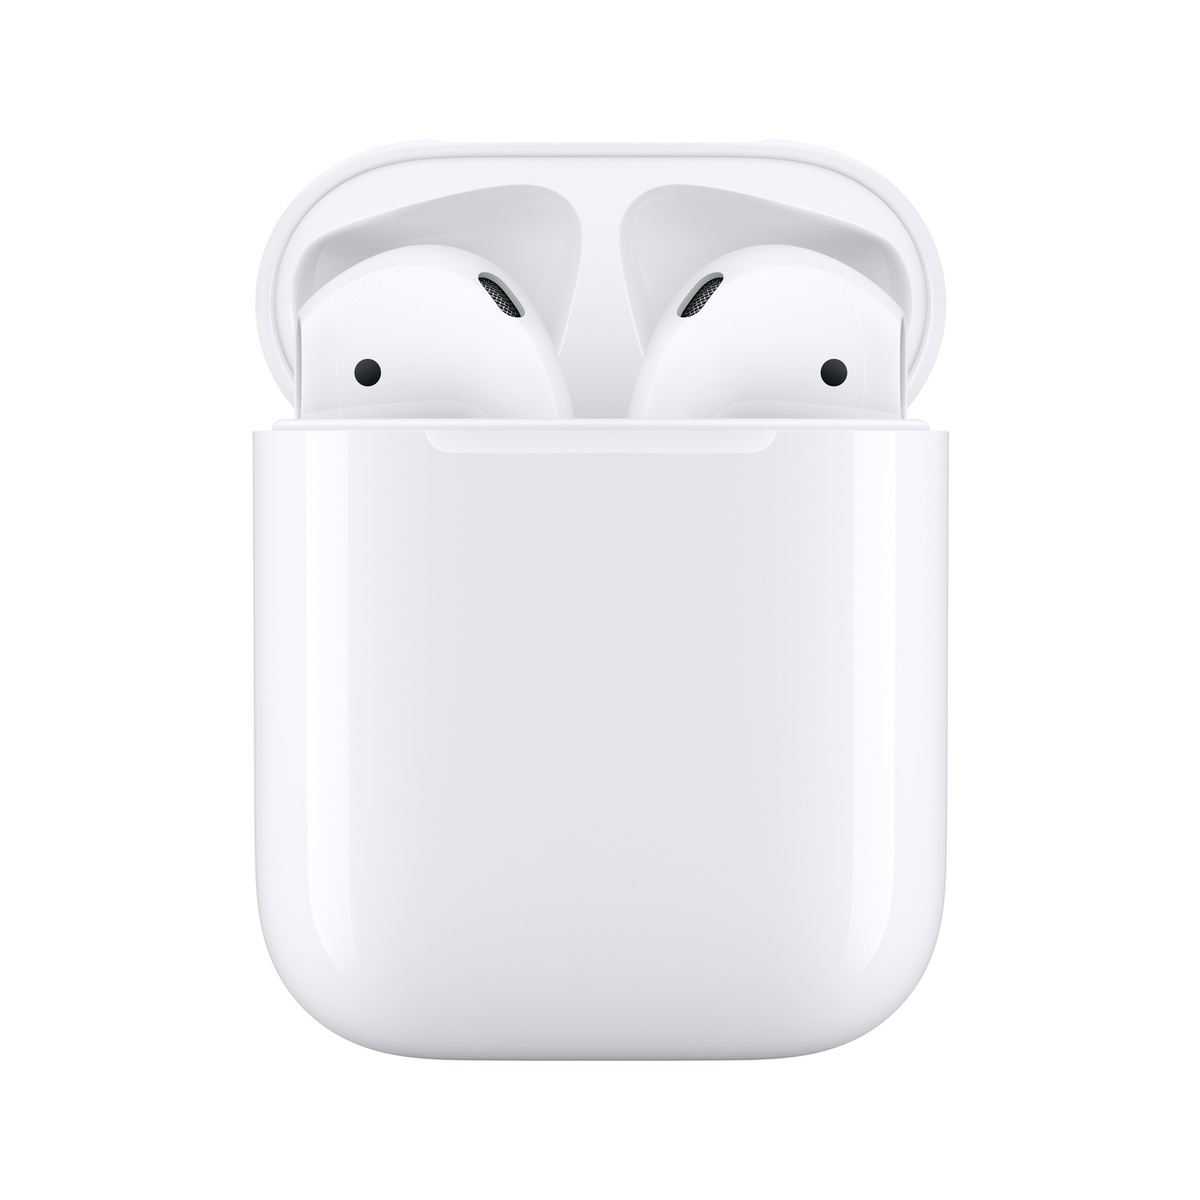 Беспроводные True Wireless вкладыши наушники Apple AirPods (2-го поколения) с микрофоном, белые  #1